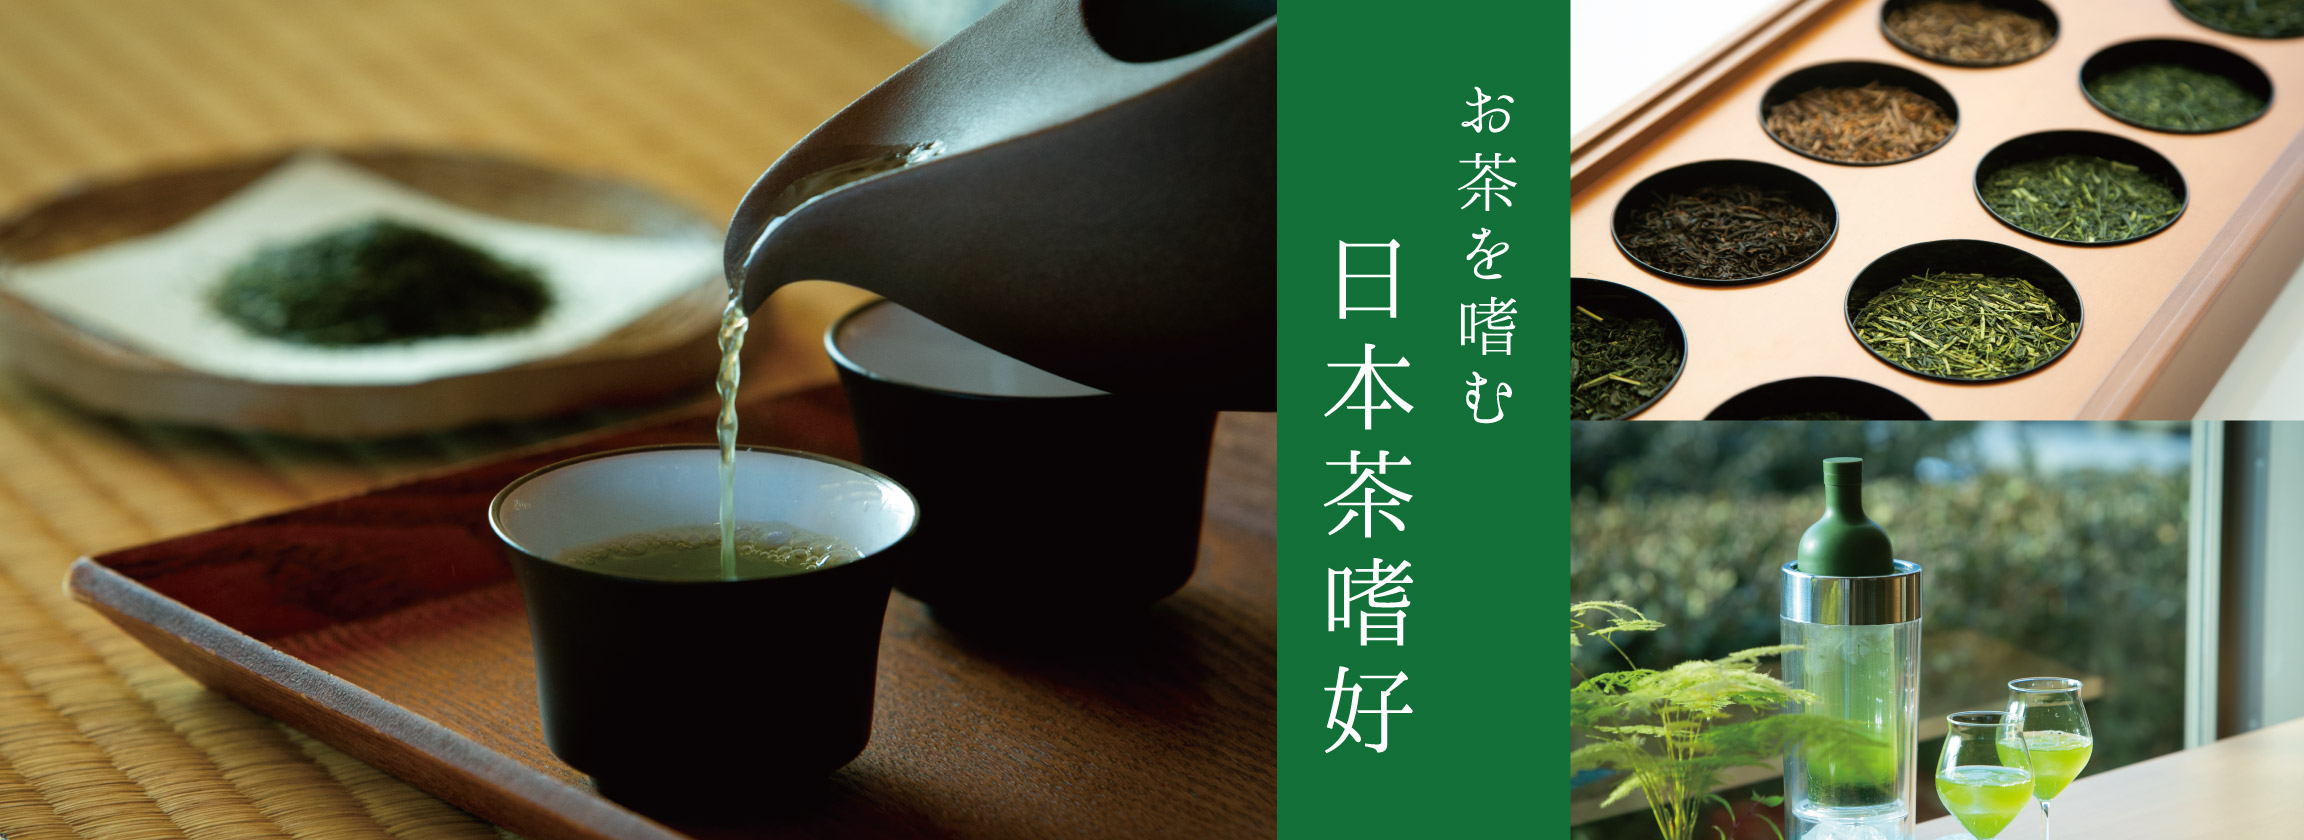 日本茶嗜好 【お茶を嗜む】お茶会や茶道などの作法やルールにとらわれず、 自分なりの愉しみかたを見つけて 親しみ深く、芳醇な香りが漂い、 心が豊かになるひとときを味わってみませんか？